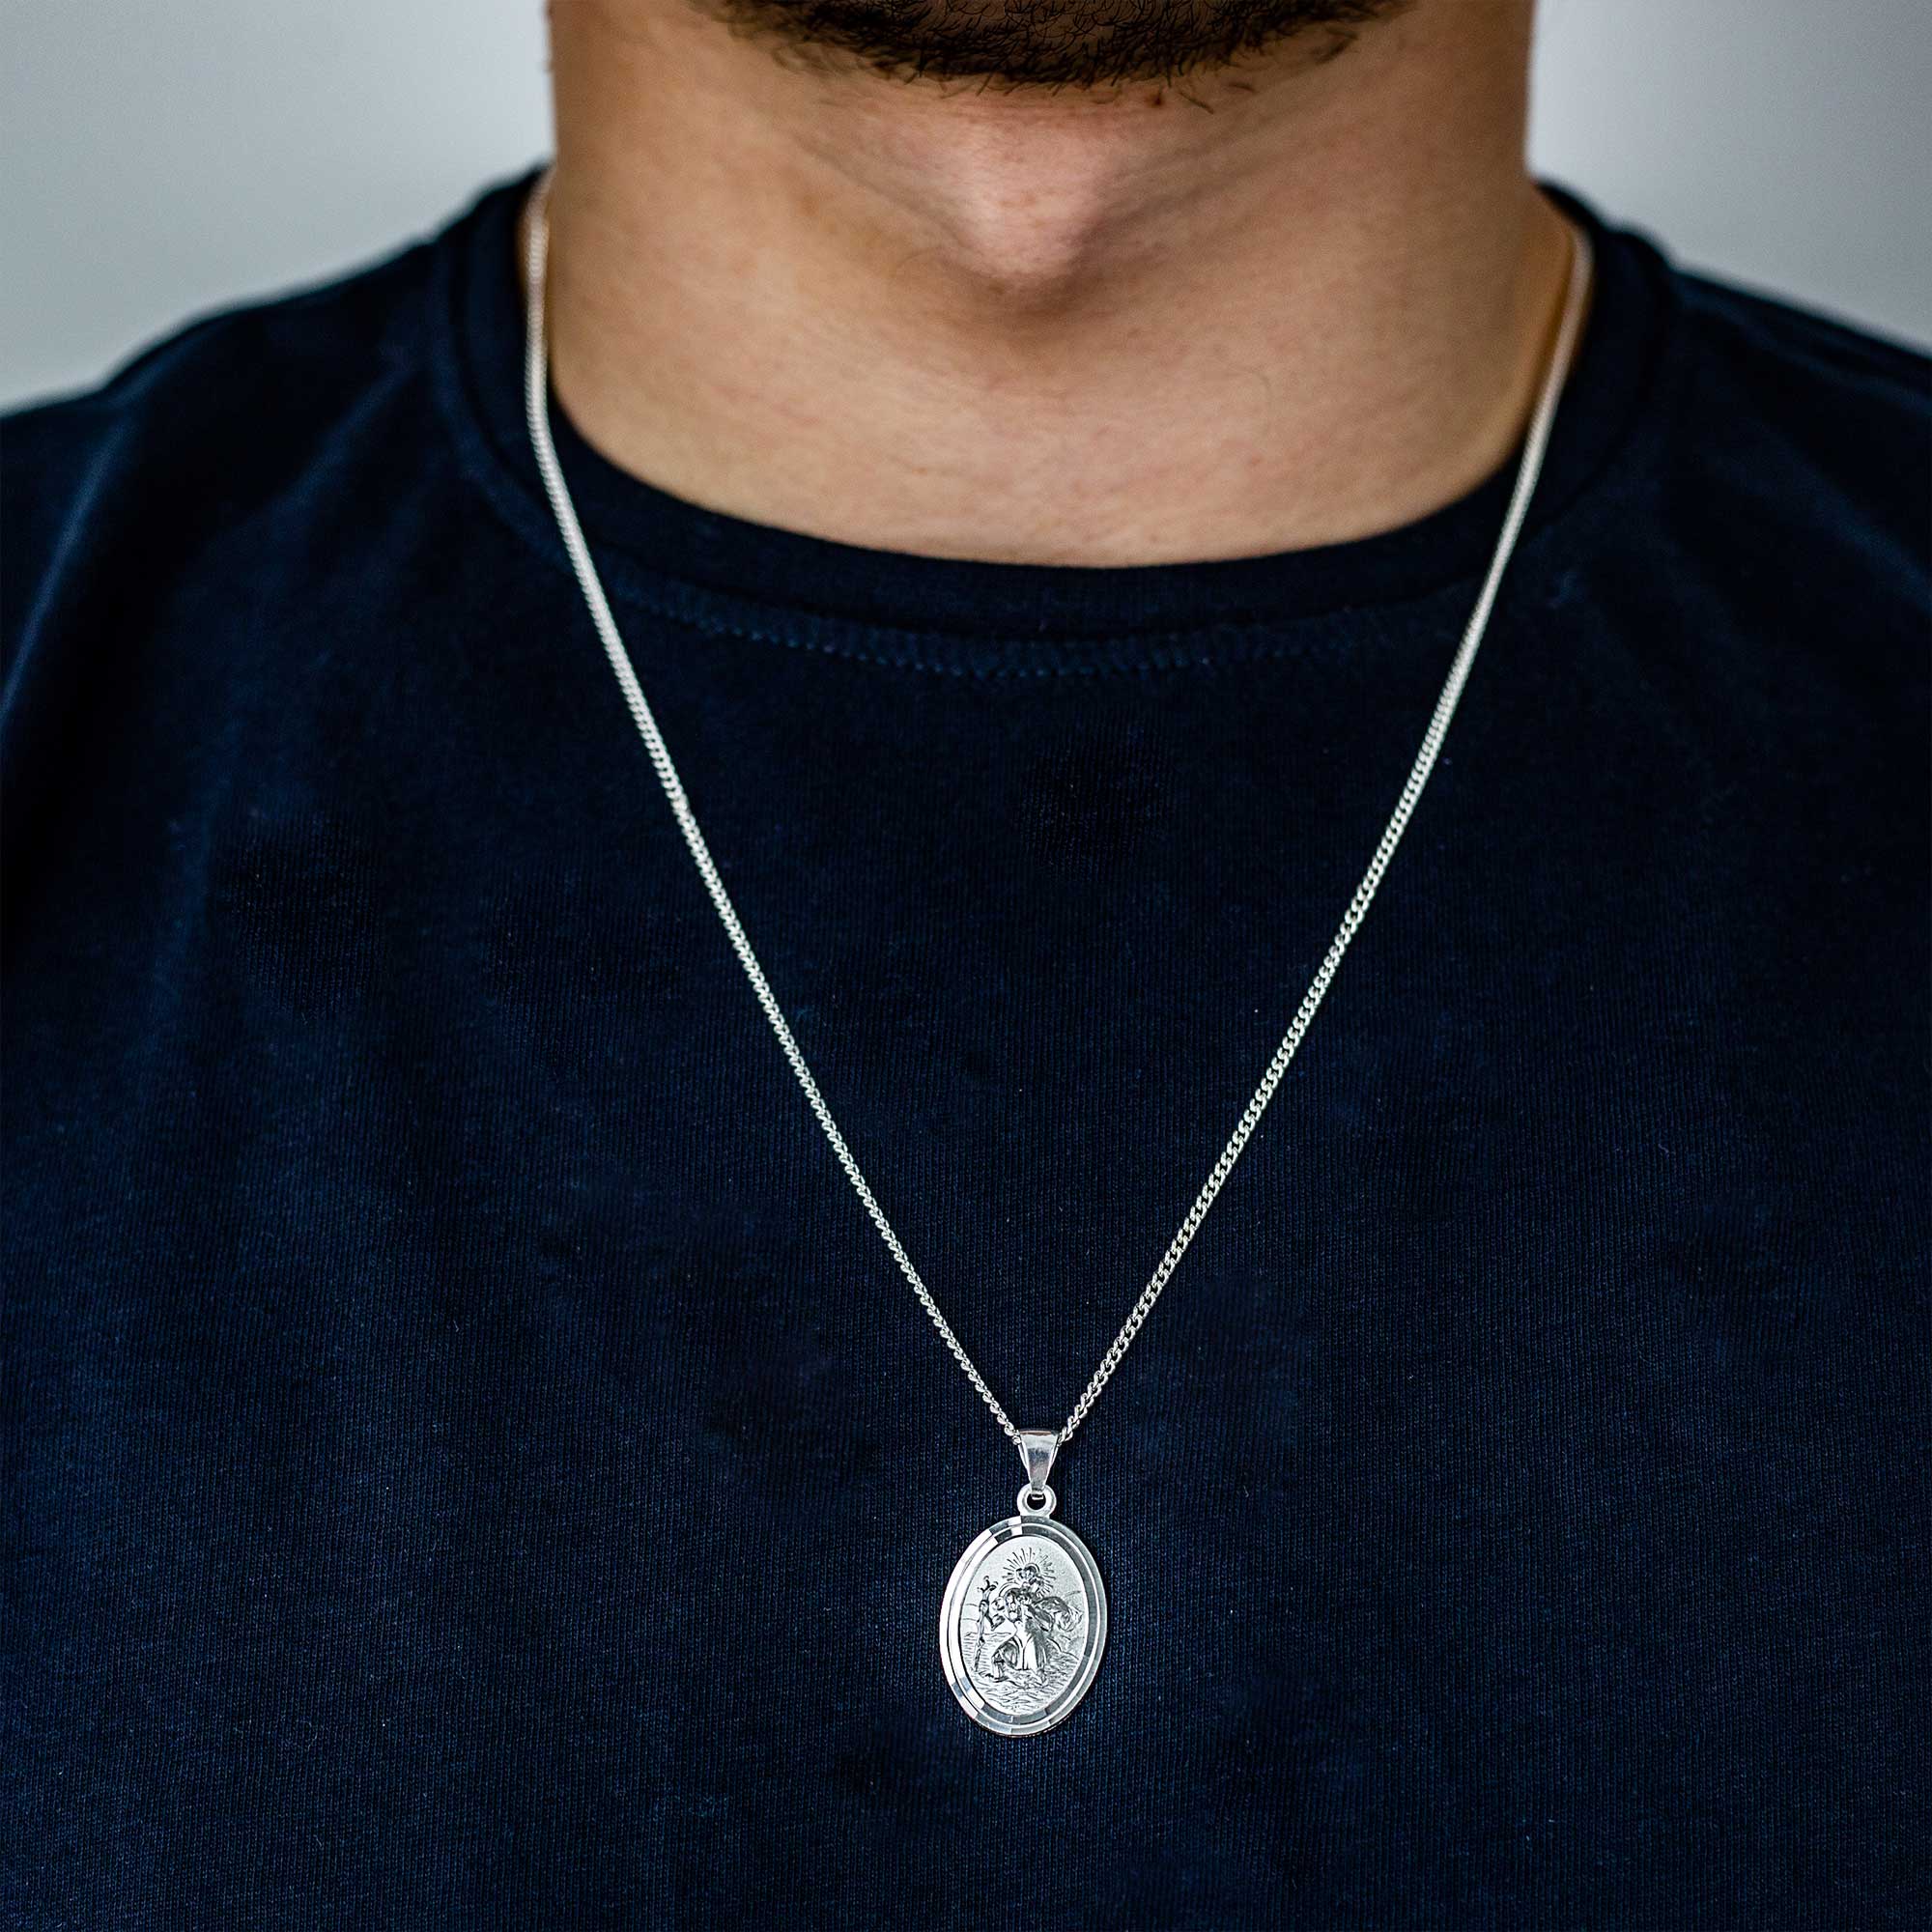 oval silver saint christopher pendant for men women travel gift for him